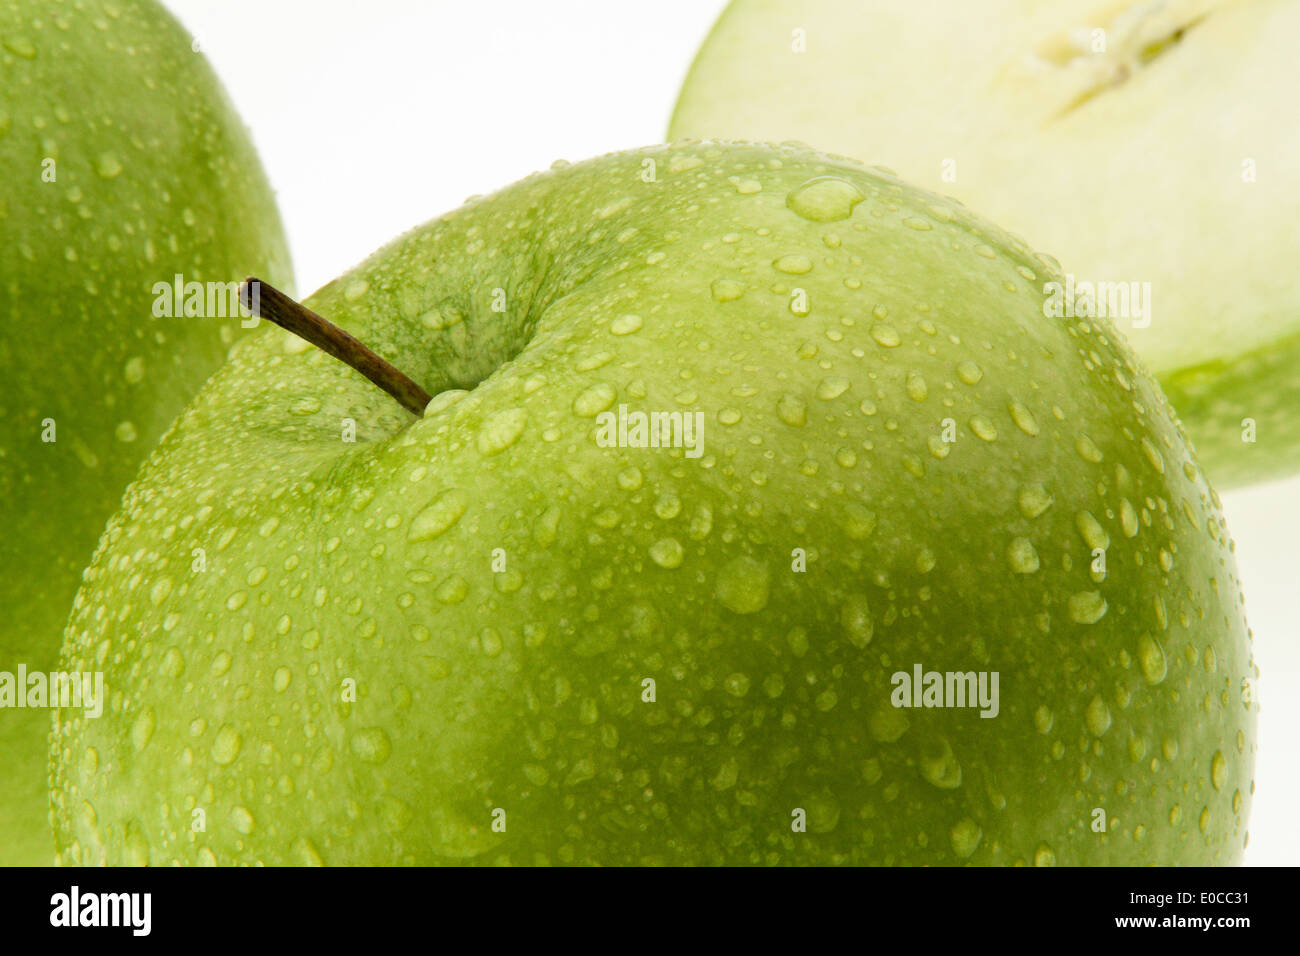 A green apple. Healthy and fresh fruit for vitamins., Ein gruener Apfel. Gesundes und frisches Obst fuer Vitamine. Stock Photo